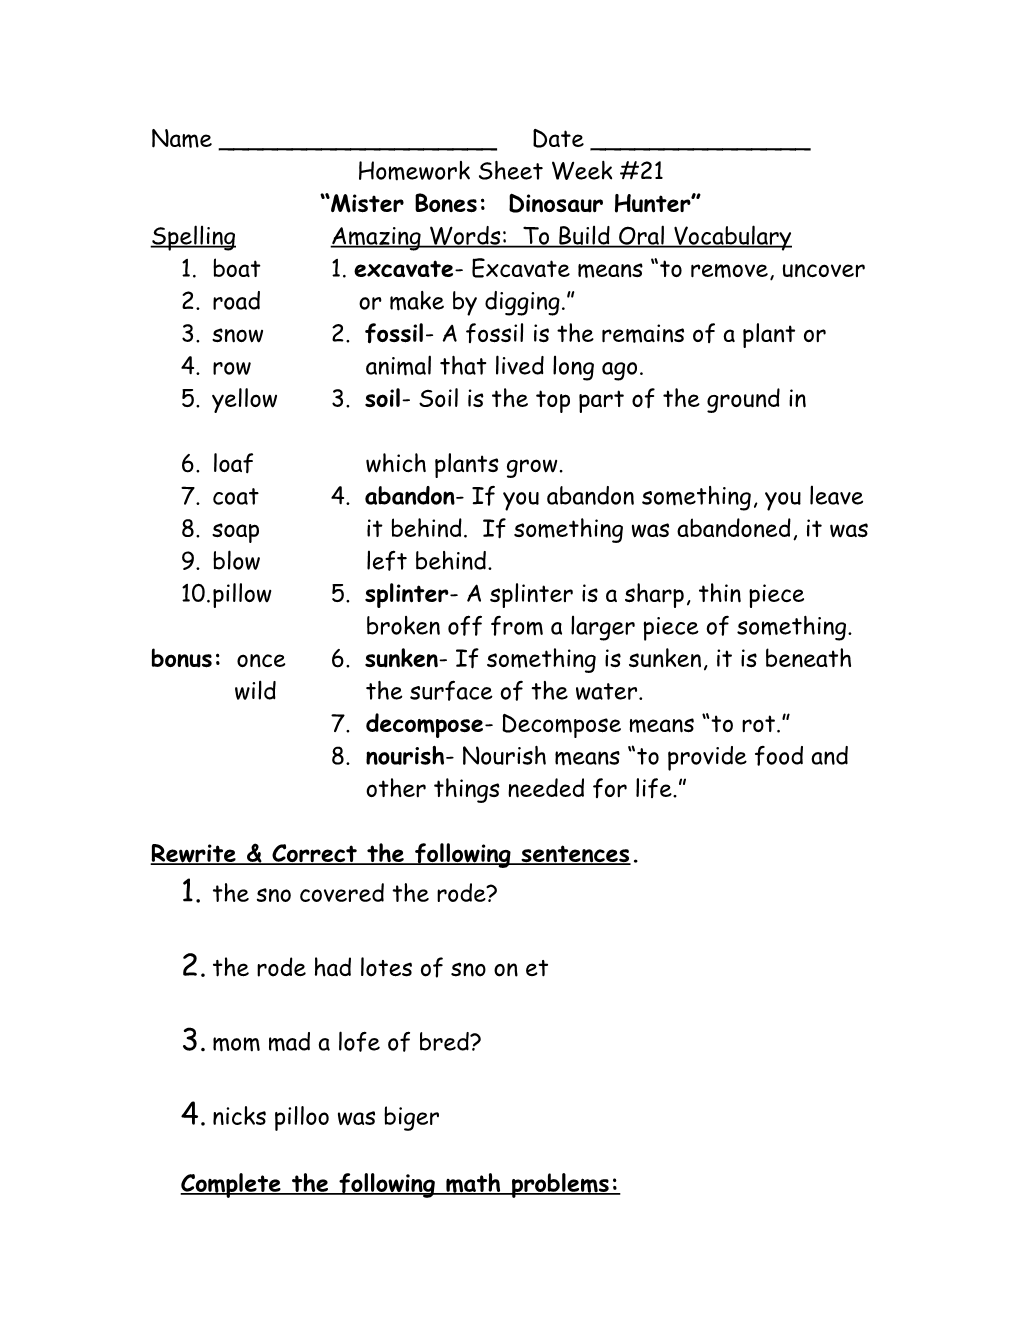 Homework Sheet Week #21